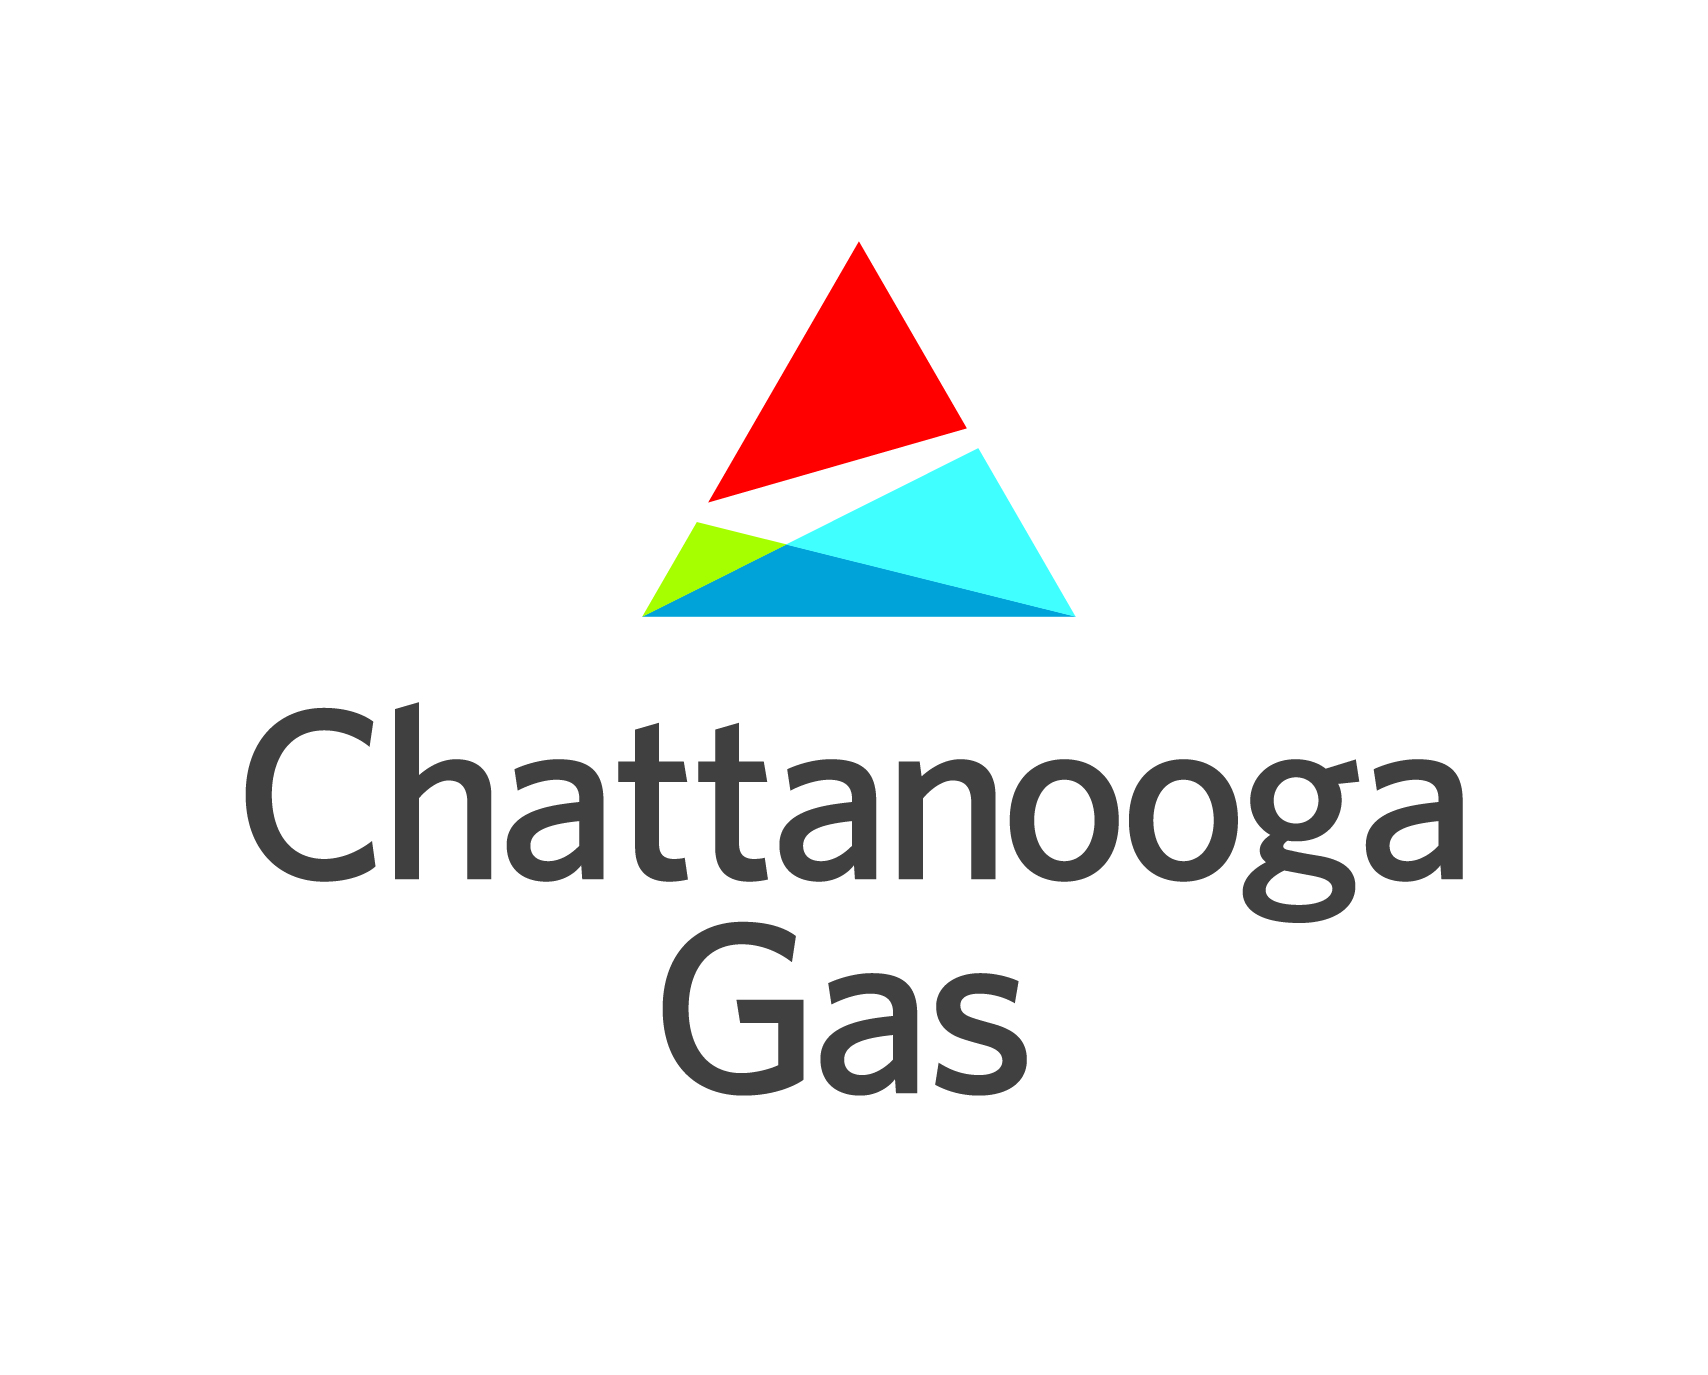 Chattanooga Gas